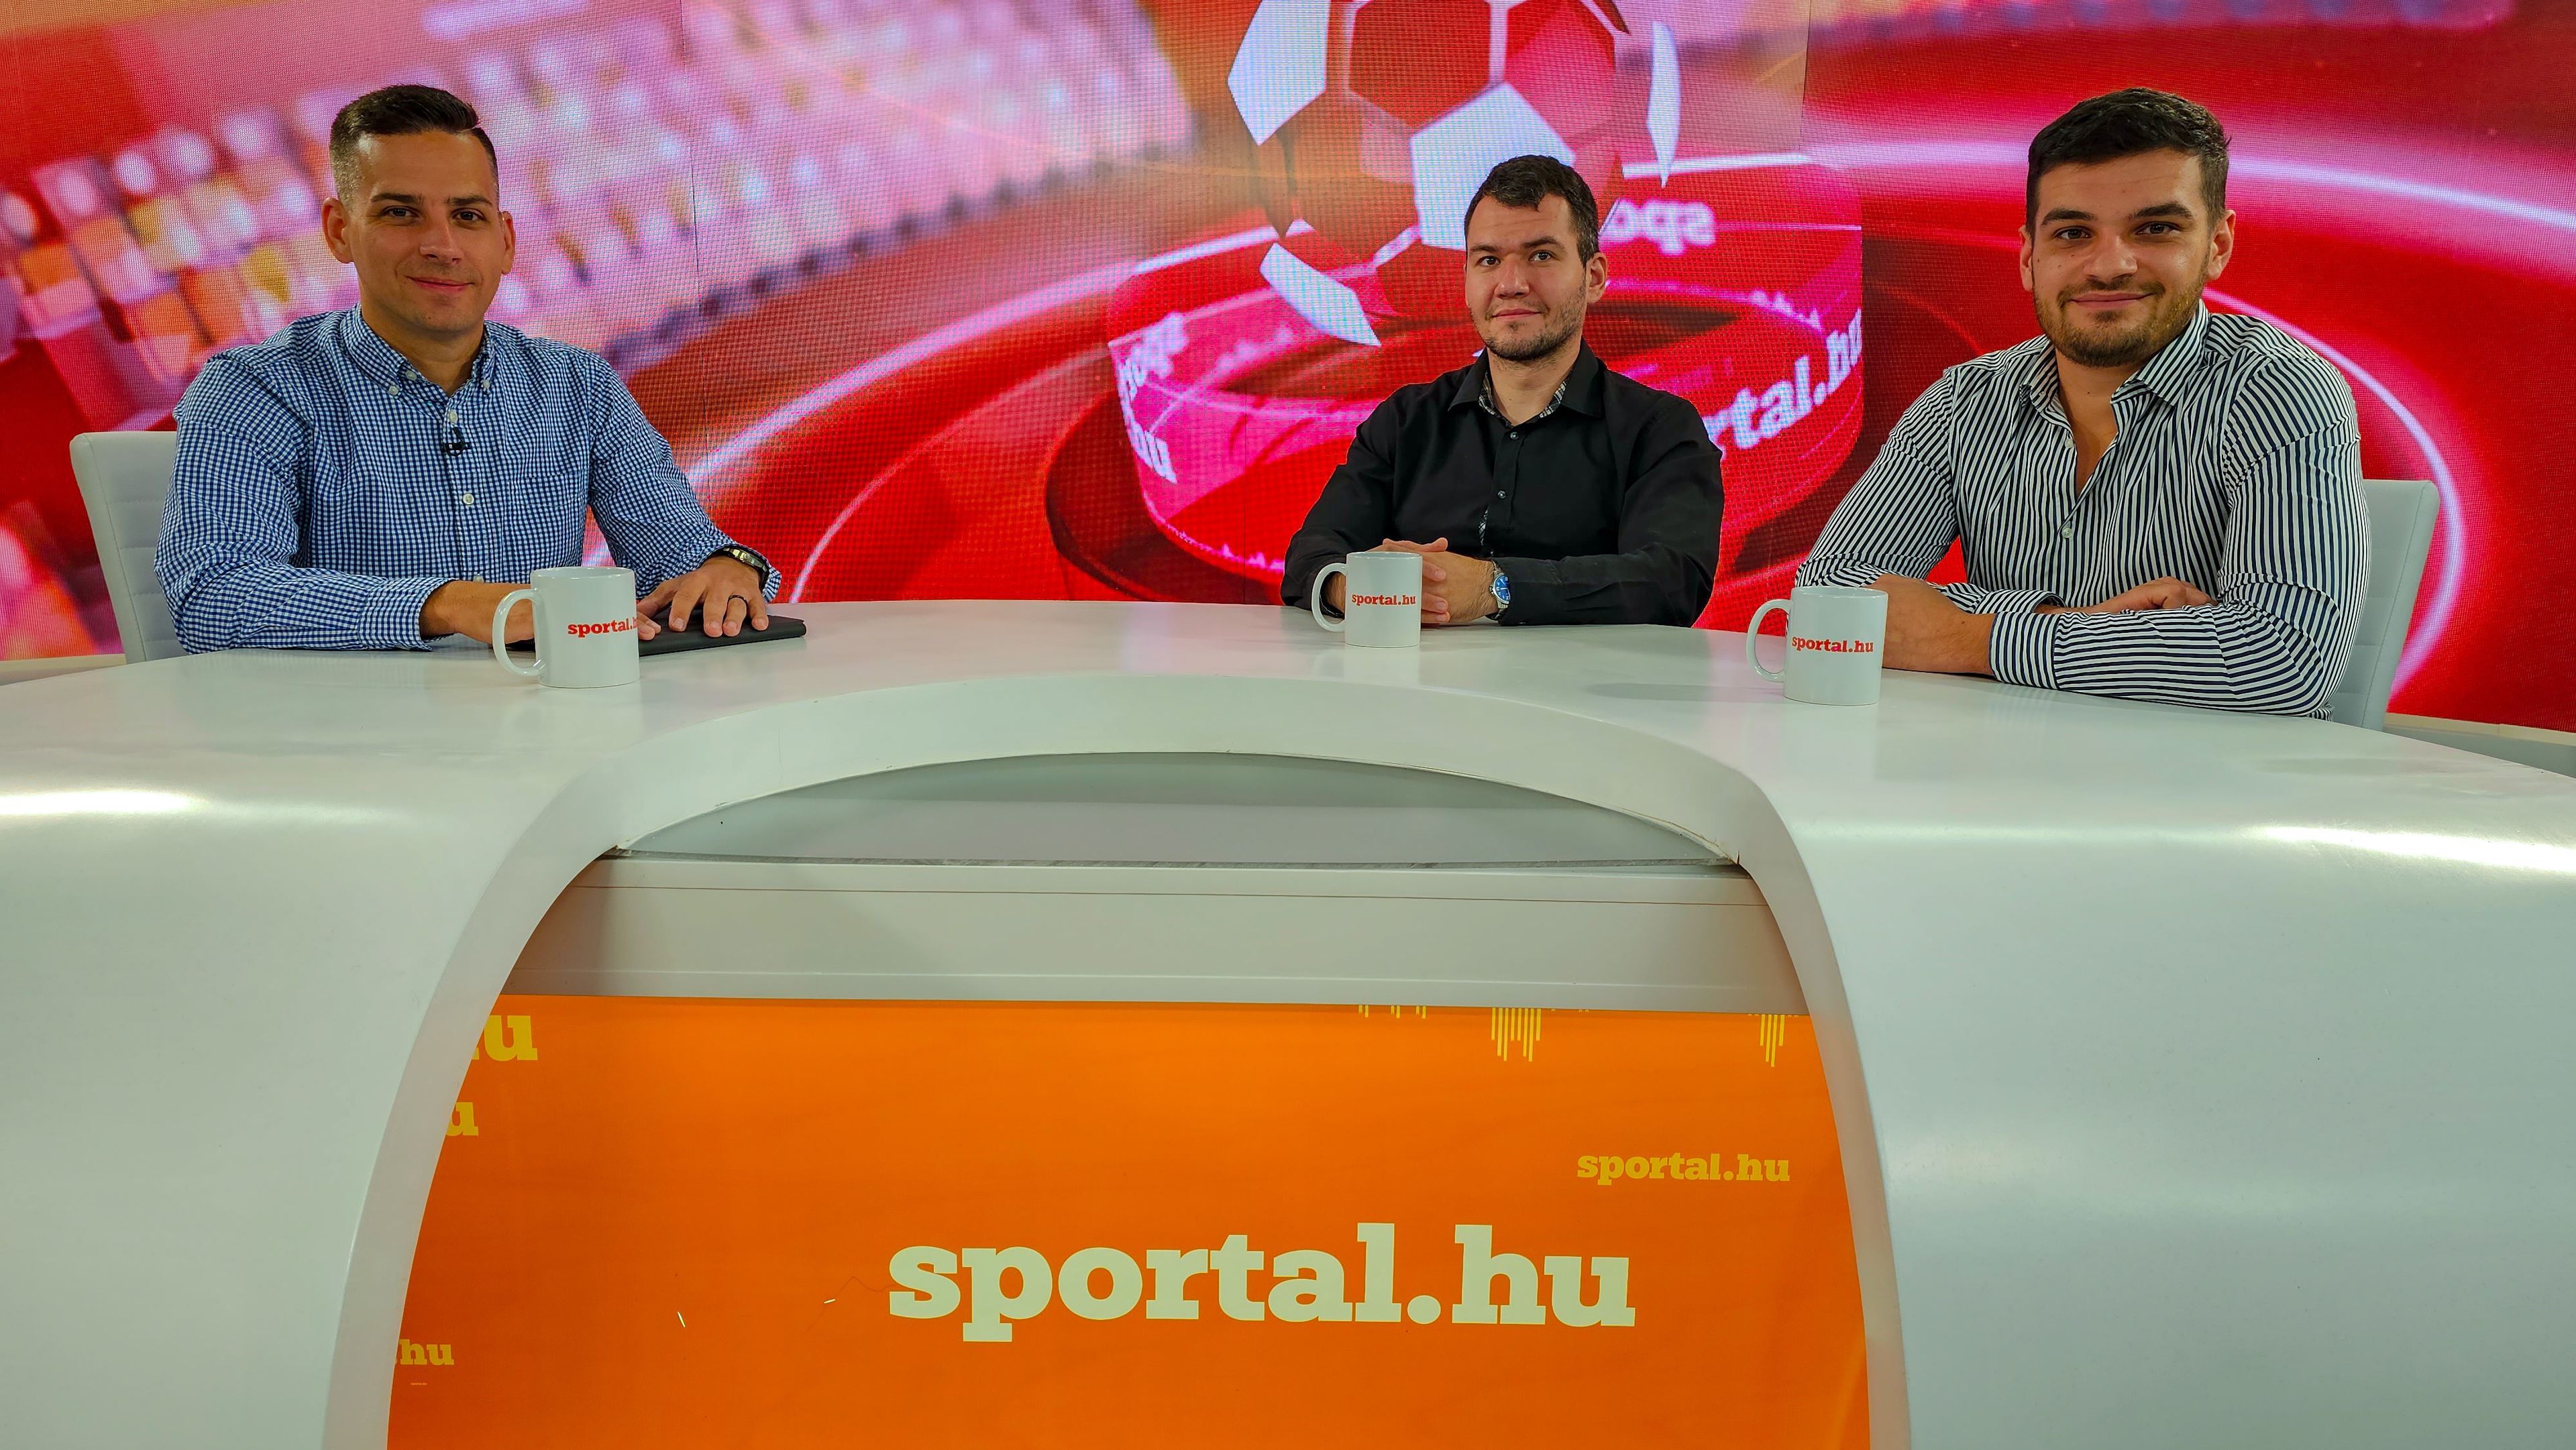 HazaiPálya – a Sportál Tv stúdiójában: Cselleng Ádám, Nagy Béla és Cseh Benjámin